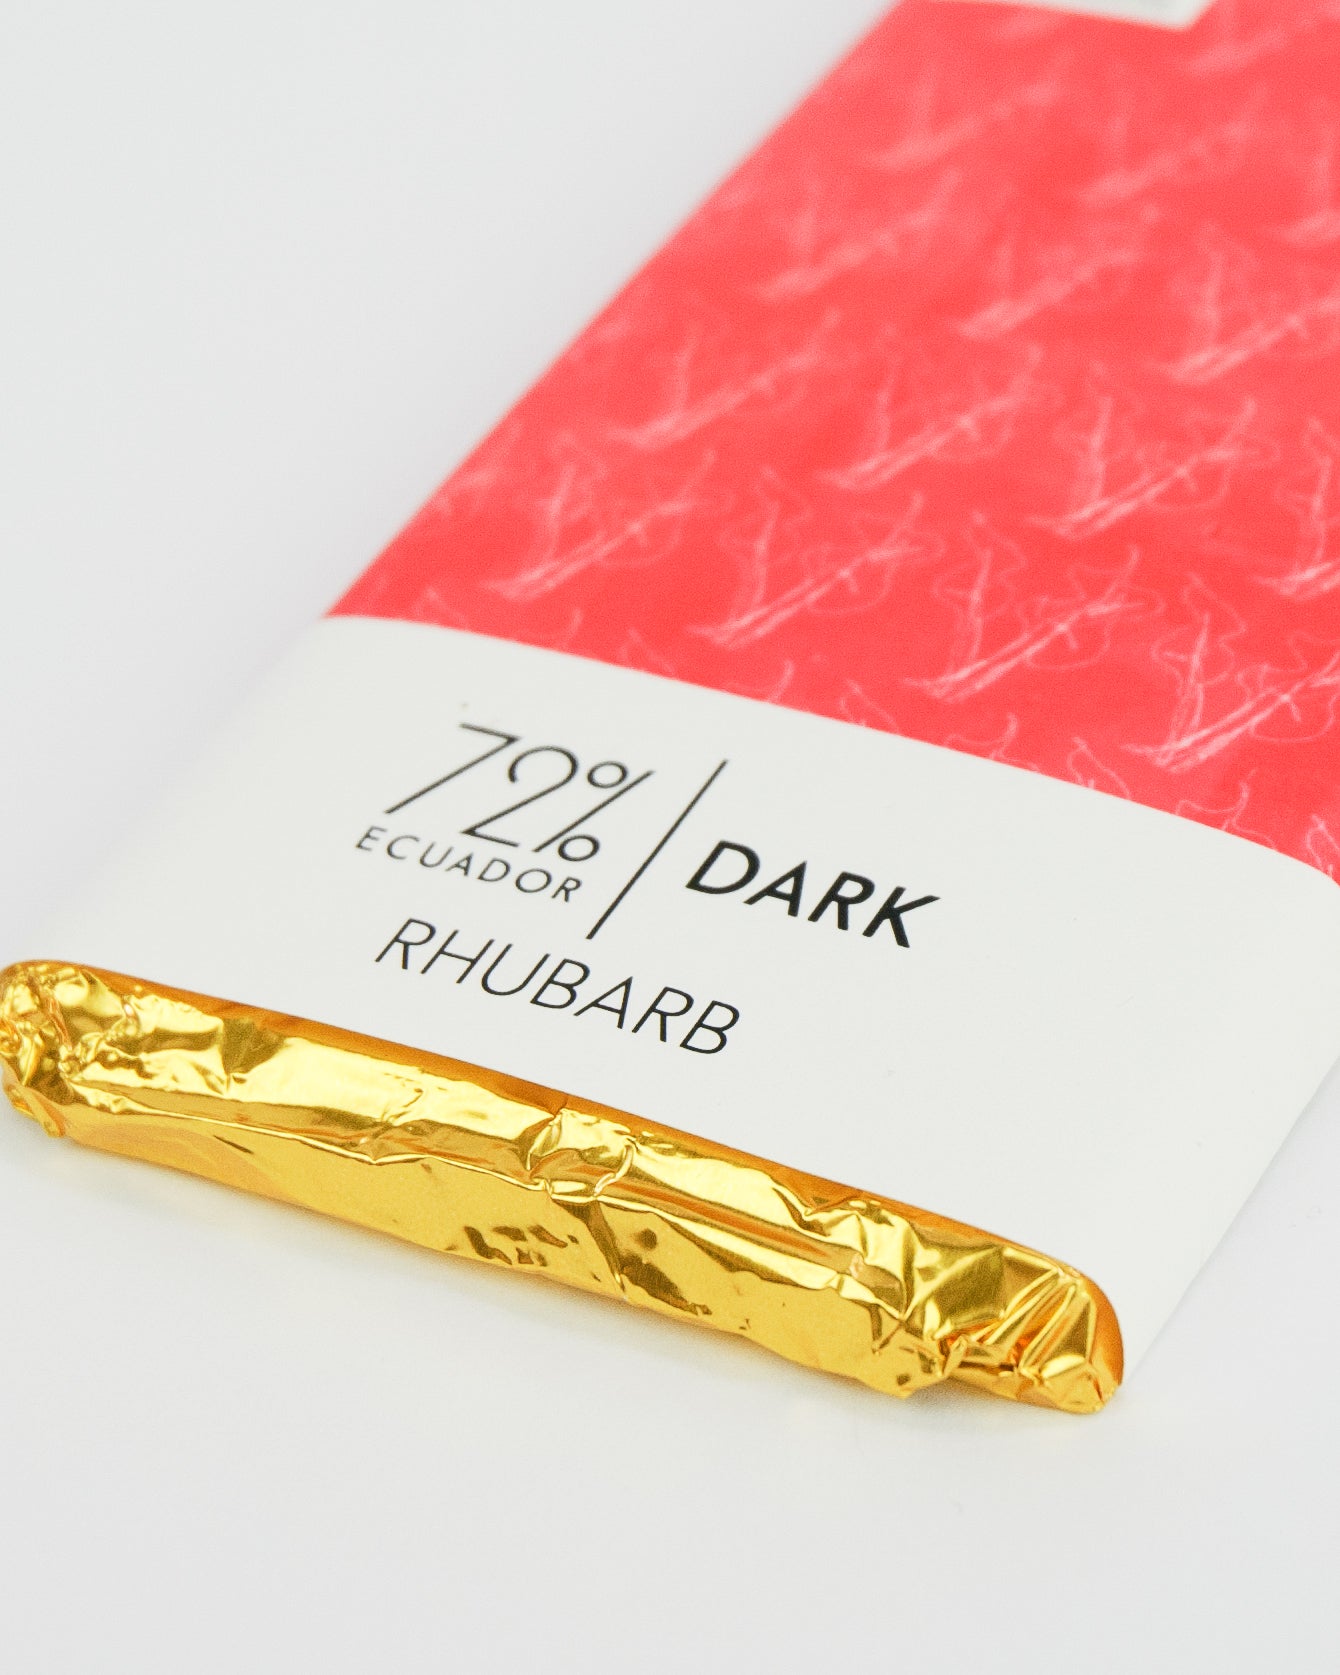 Rhubarb Curd Dark Chocolate Bar - 72% Ecuadorian